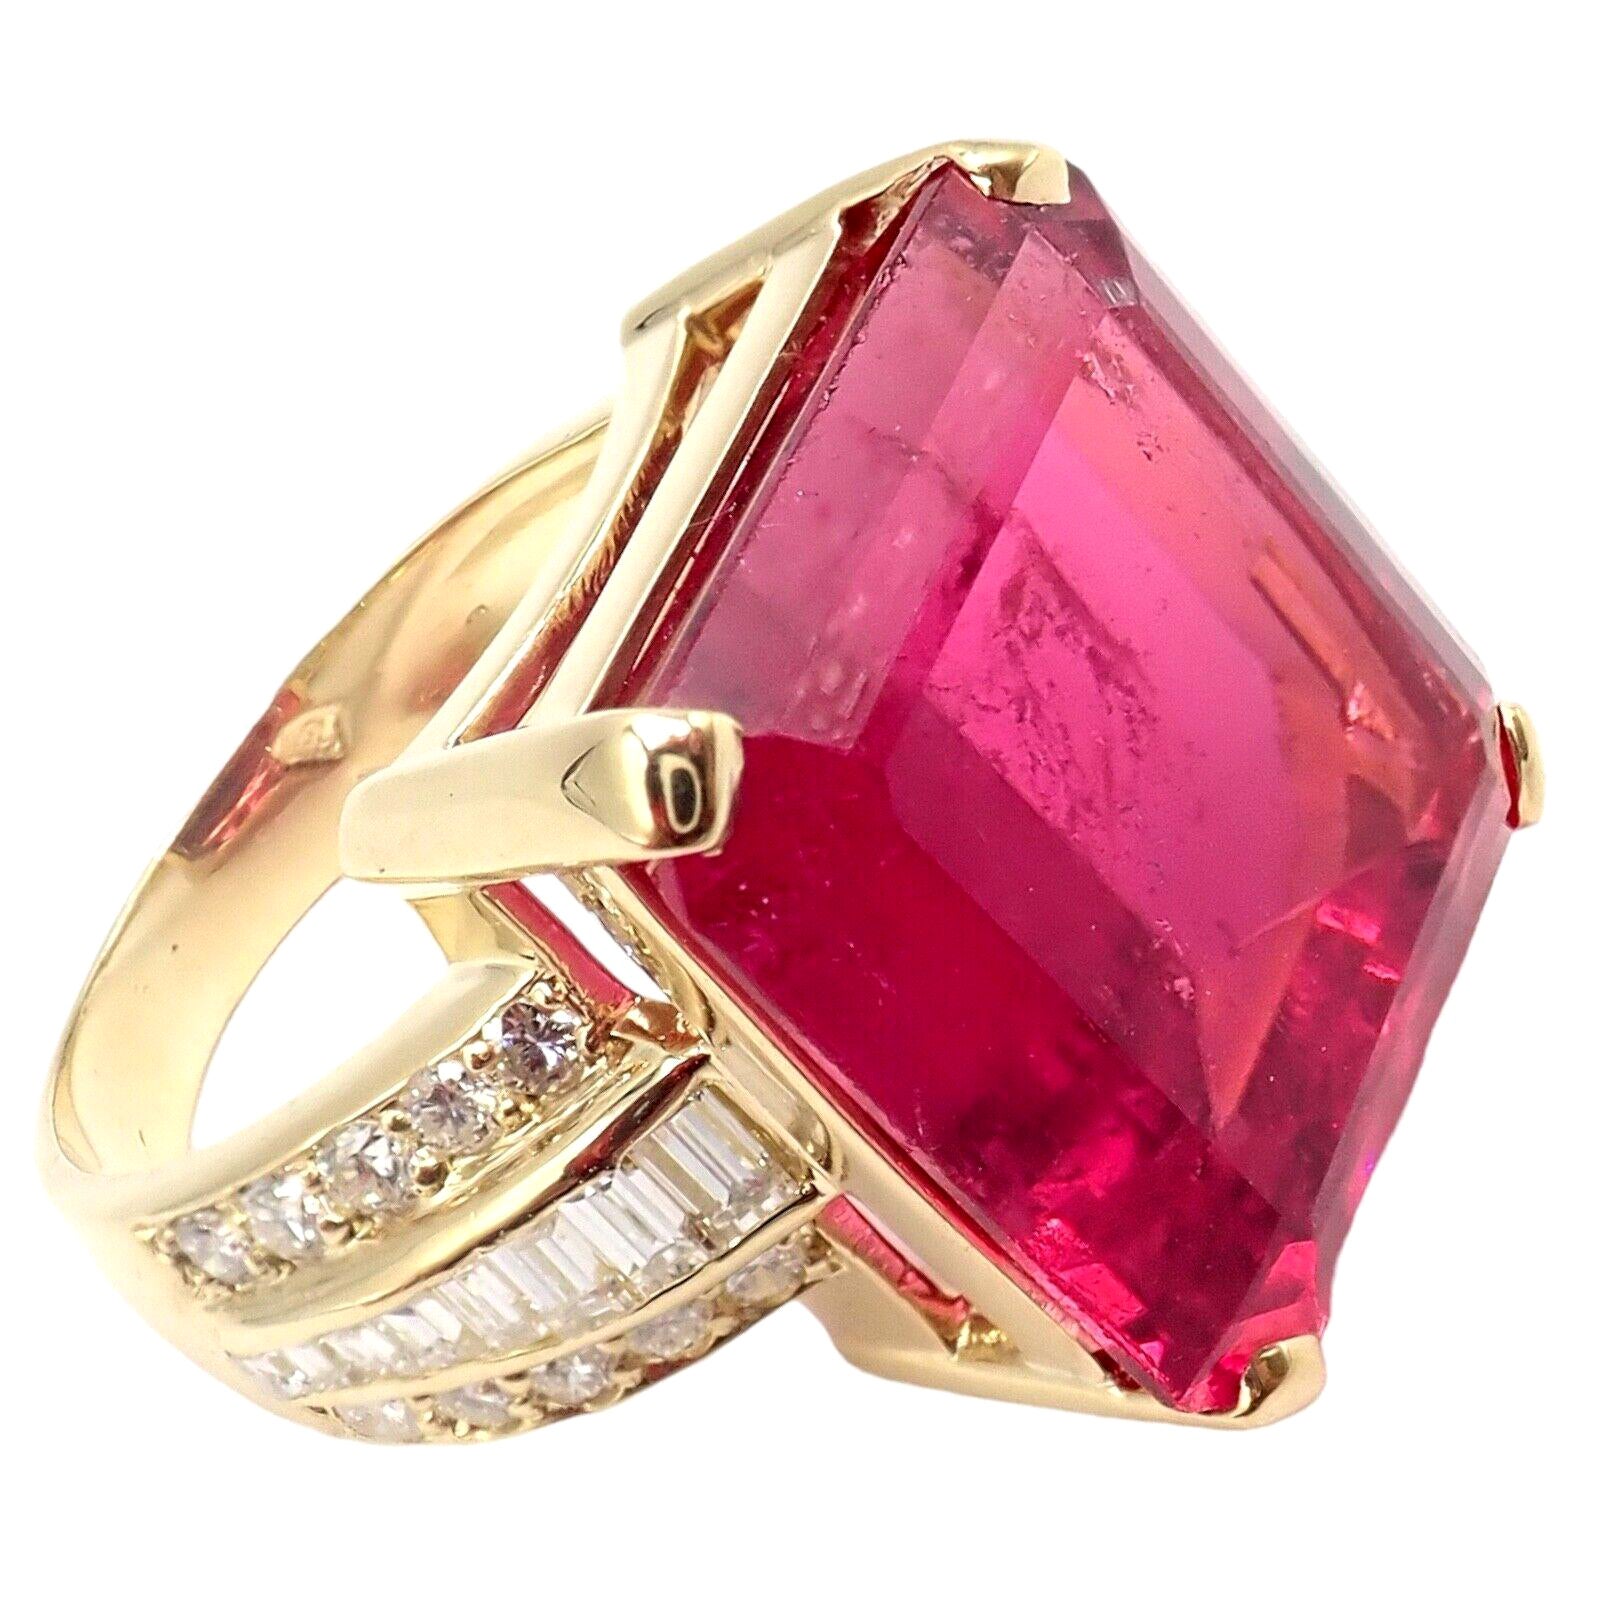 H. Stern Diamond Large Pink Tourmaline Yellow Gold Statement Ring